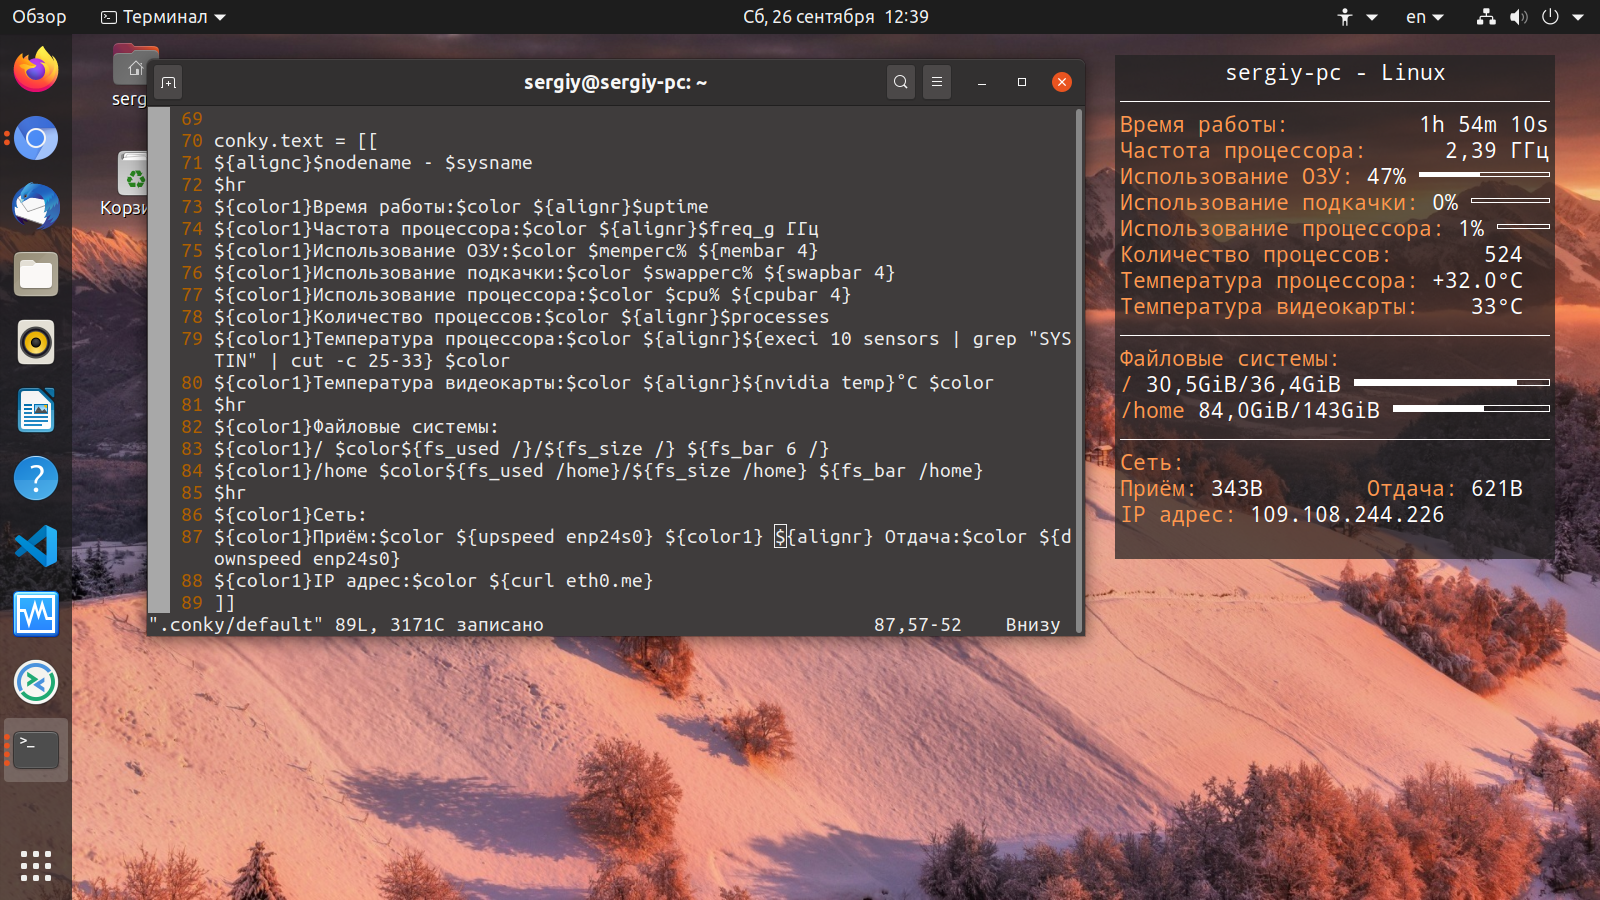 Включение ubuntu по расписанию - web-разработка от ильдара